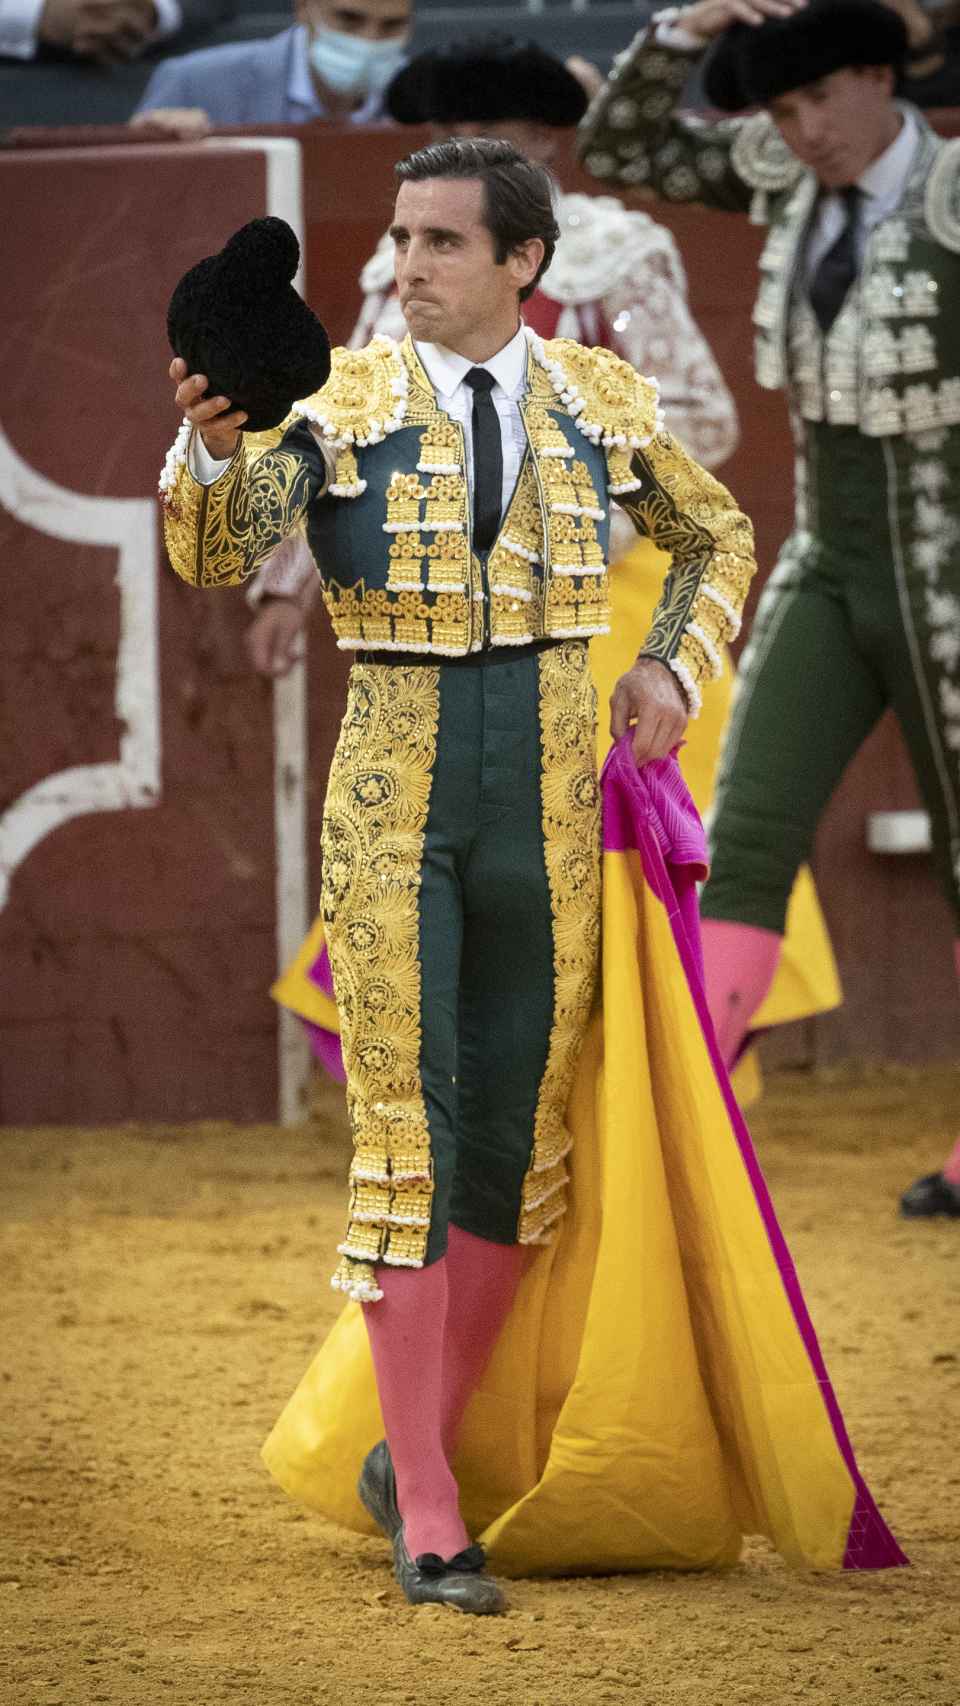 Juan Ortega tras una faena taurina, en la capital de España, en mayo de 2021.